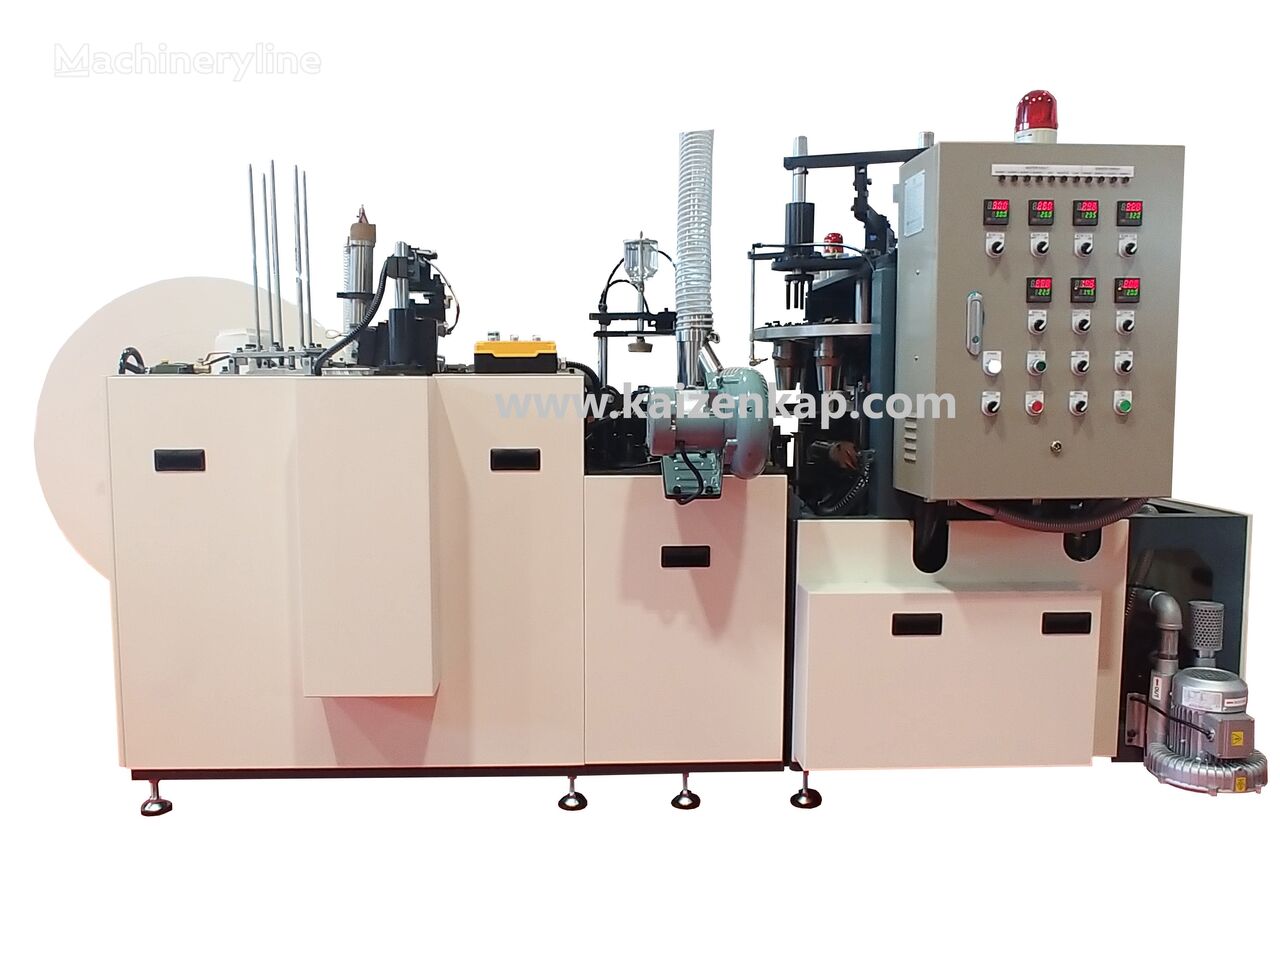 دستگاه تولید لیوان کاغذی Kaizenkap 22 oz Kağıt Bardak Üretim Makinesi جدید